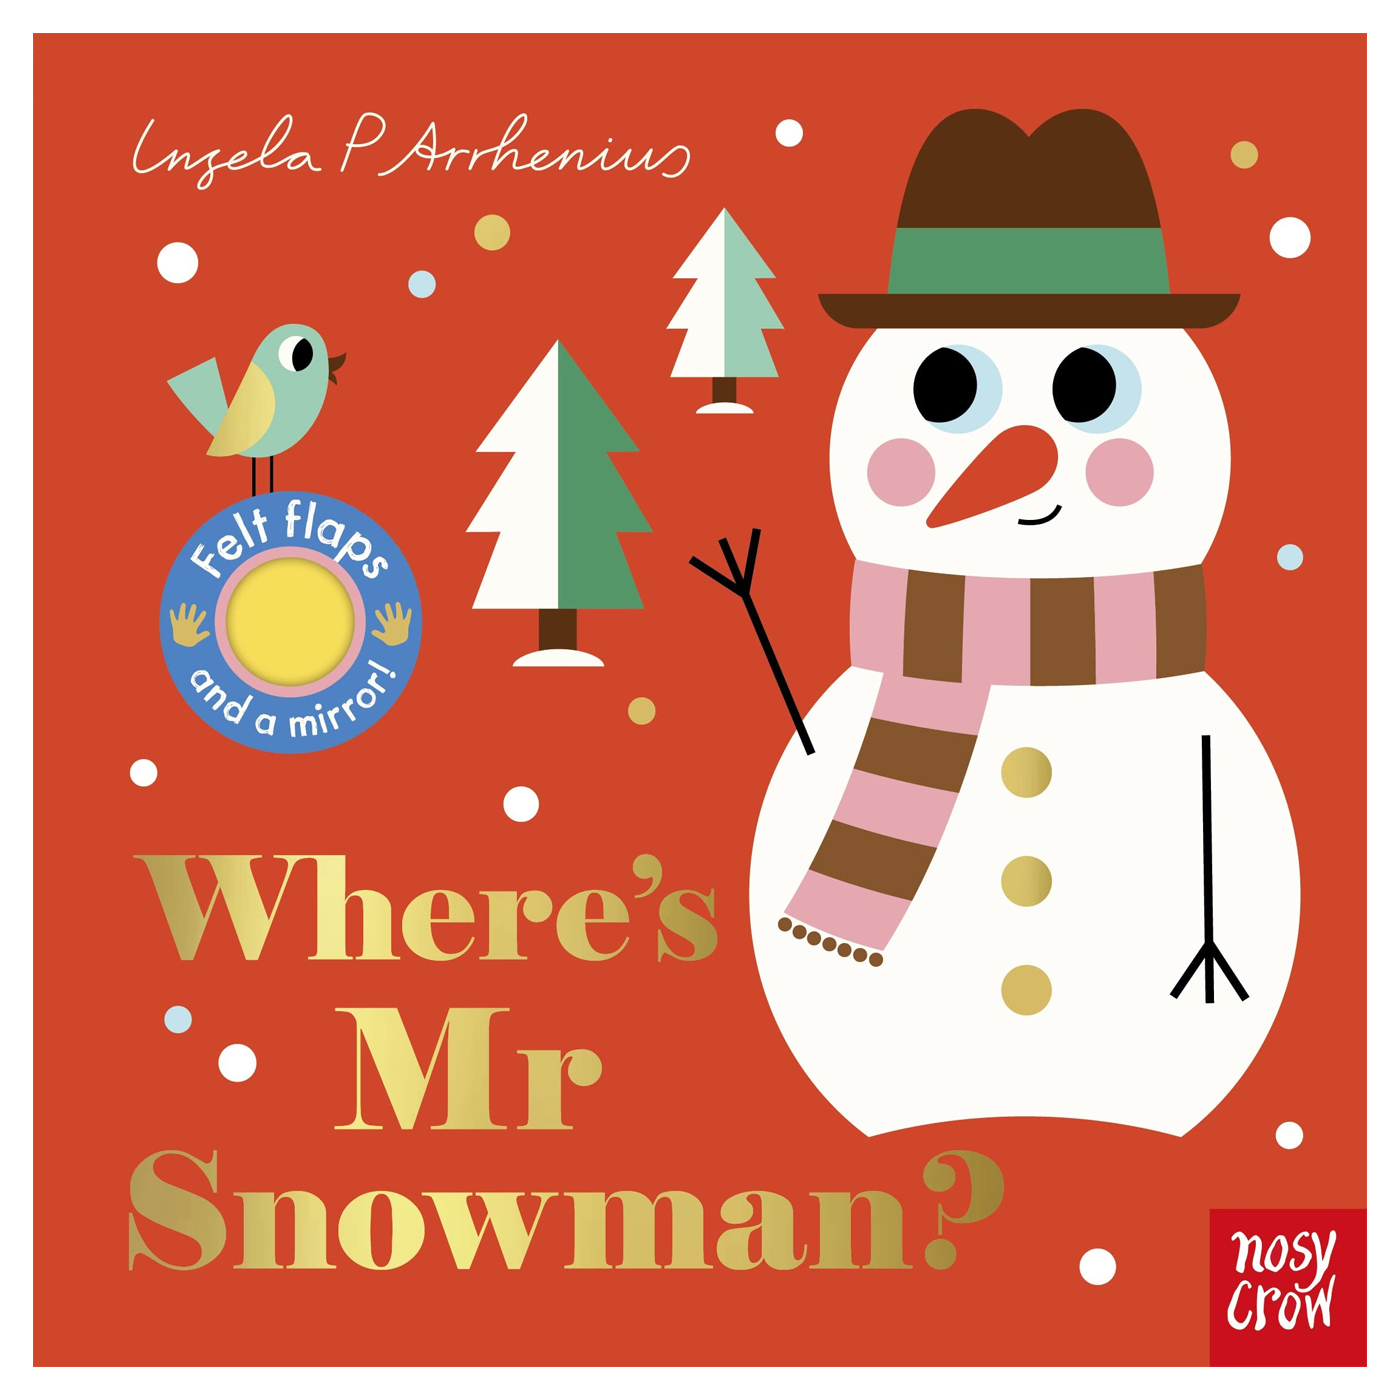  Where's Mr Snowman?